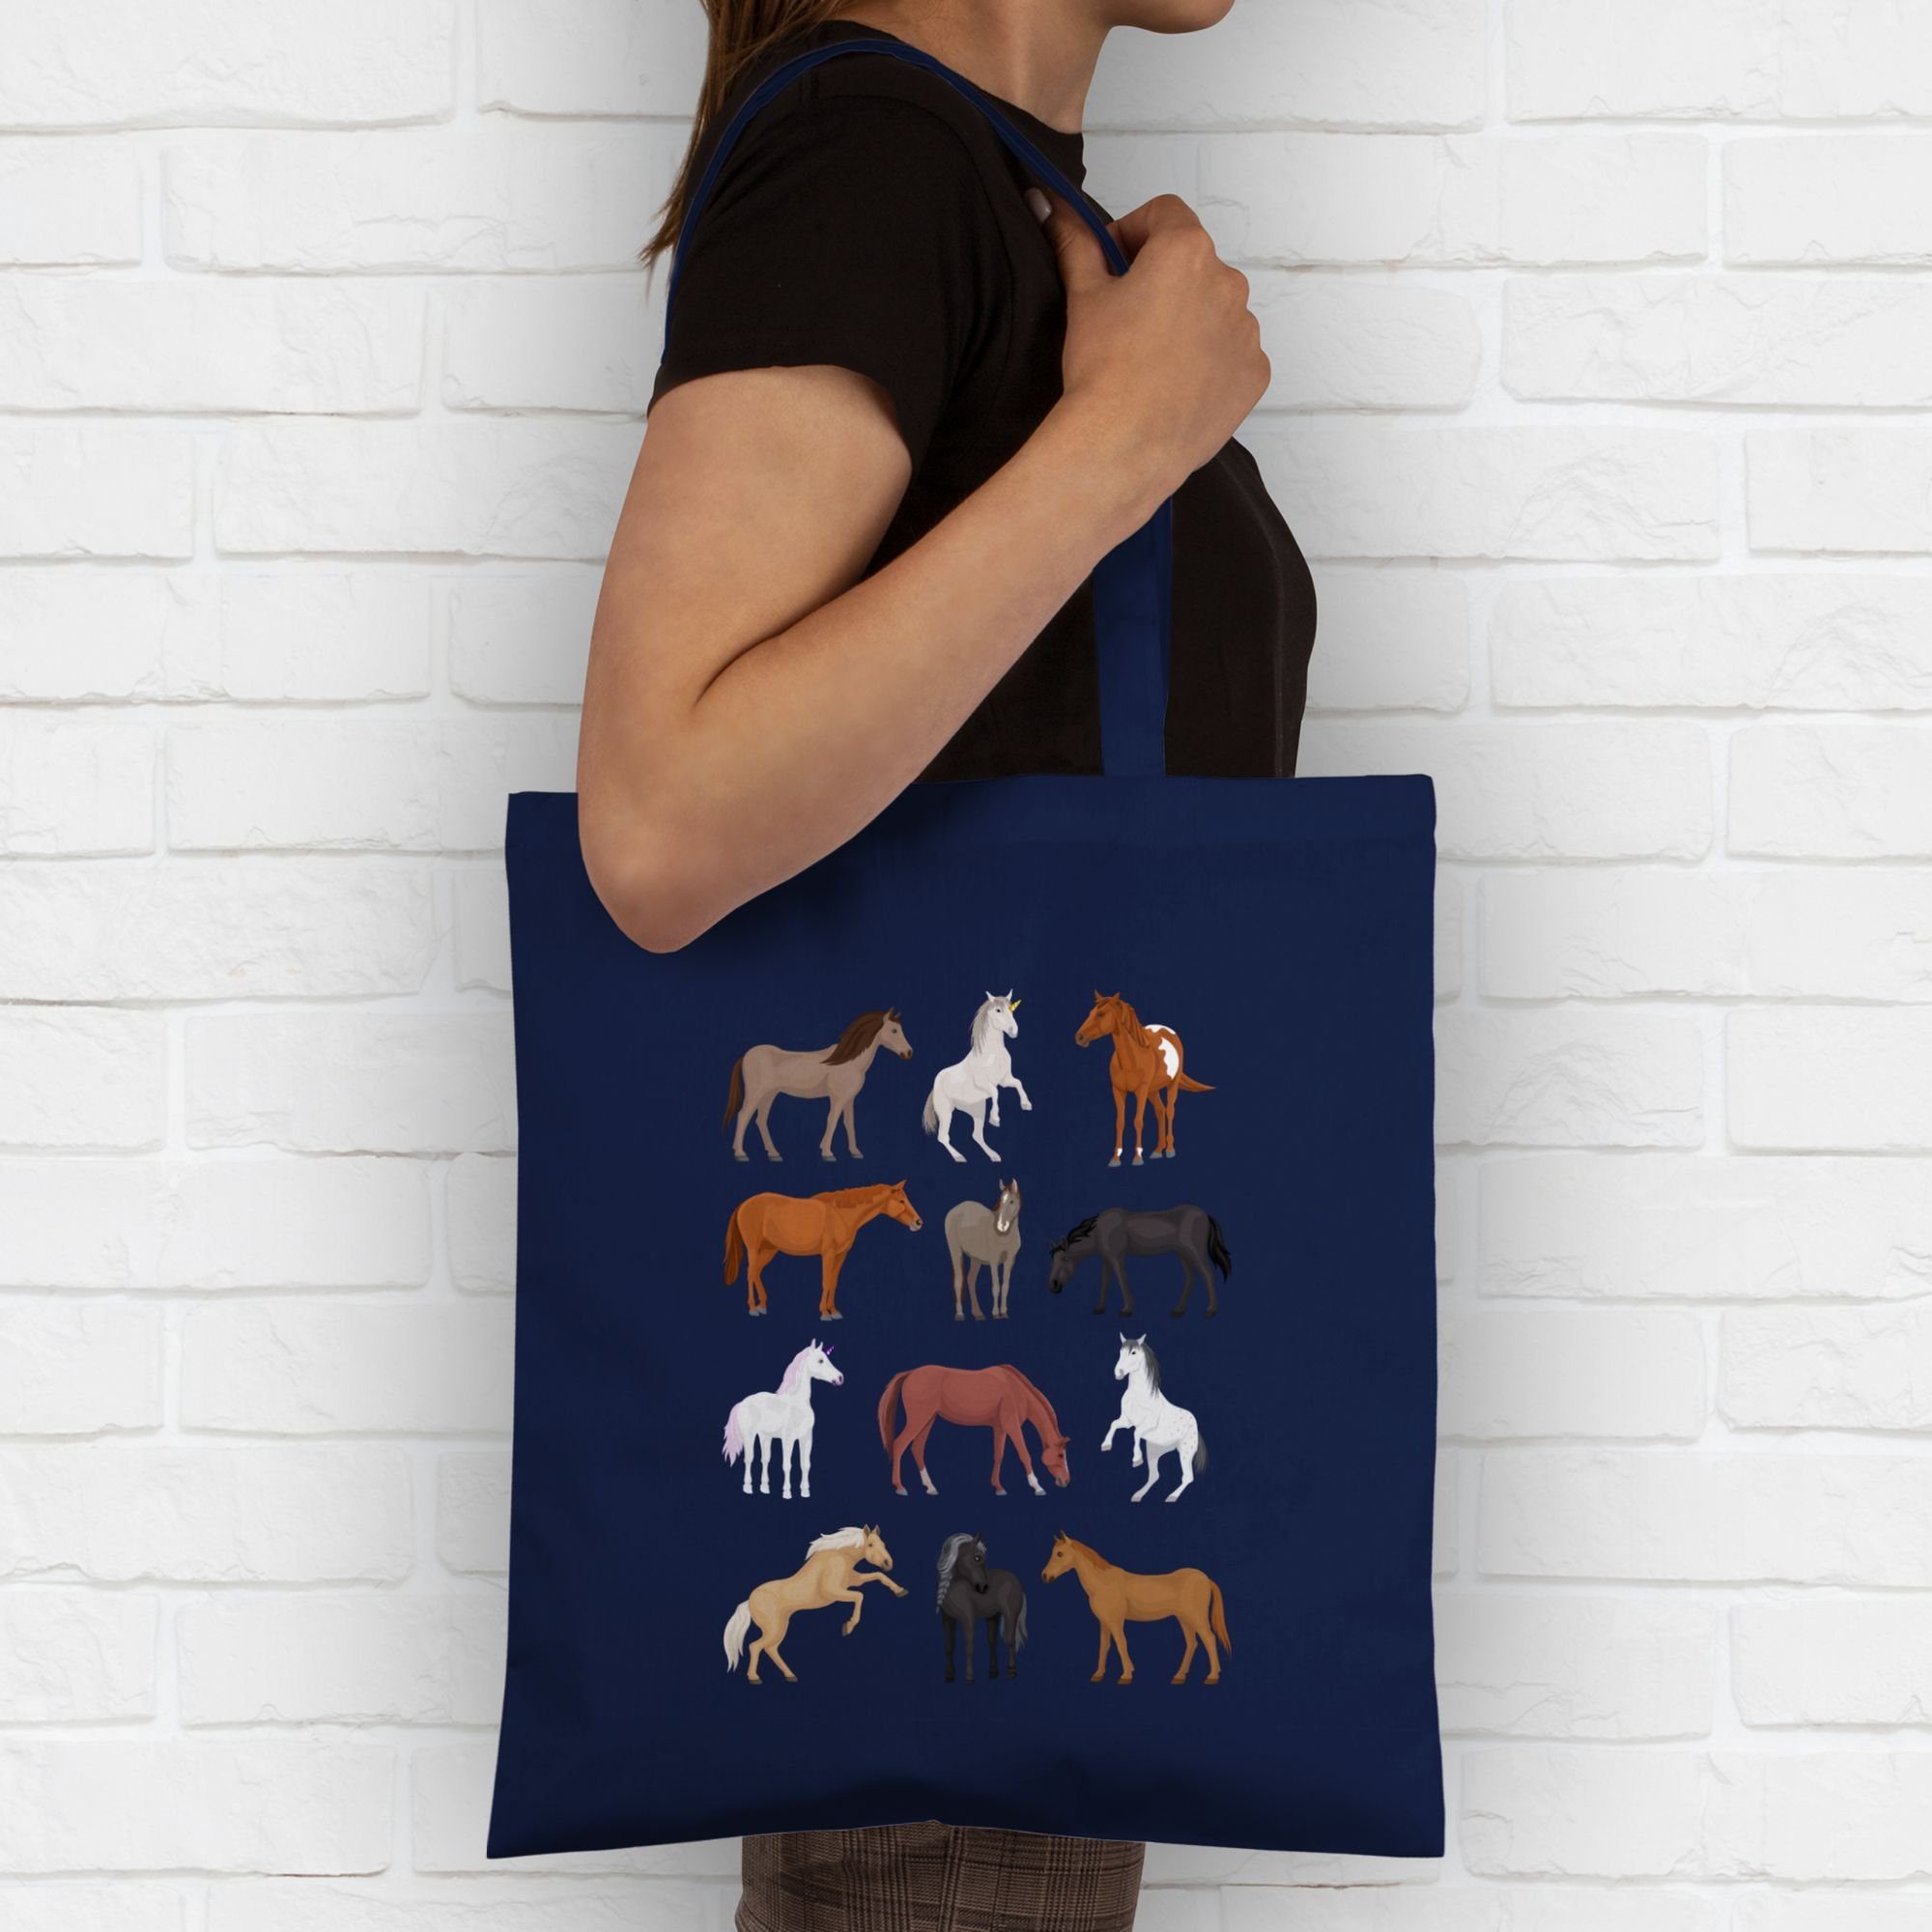 Pferde Animal Tiermotiv Print Reihe, 1 Umhängetasche Shirtracer Blau Navy